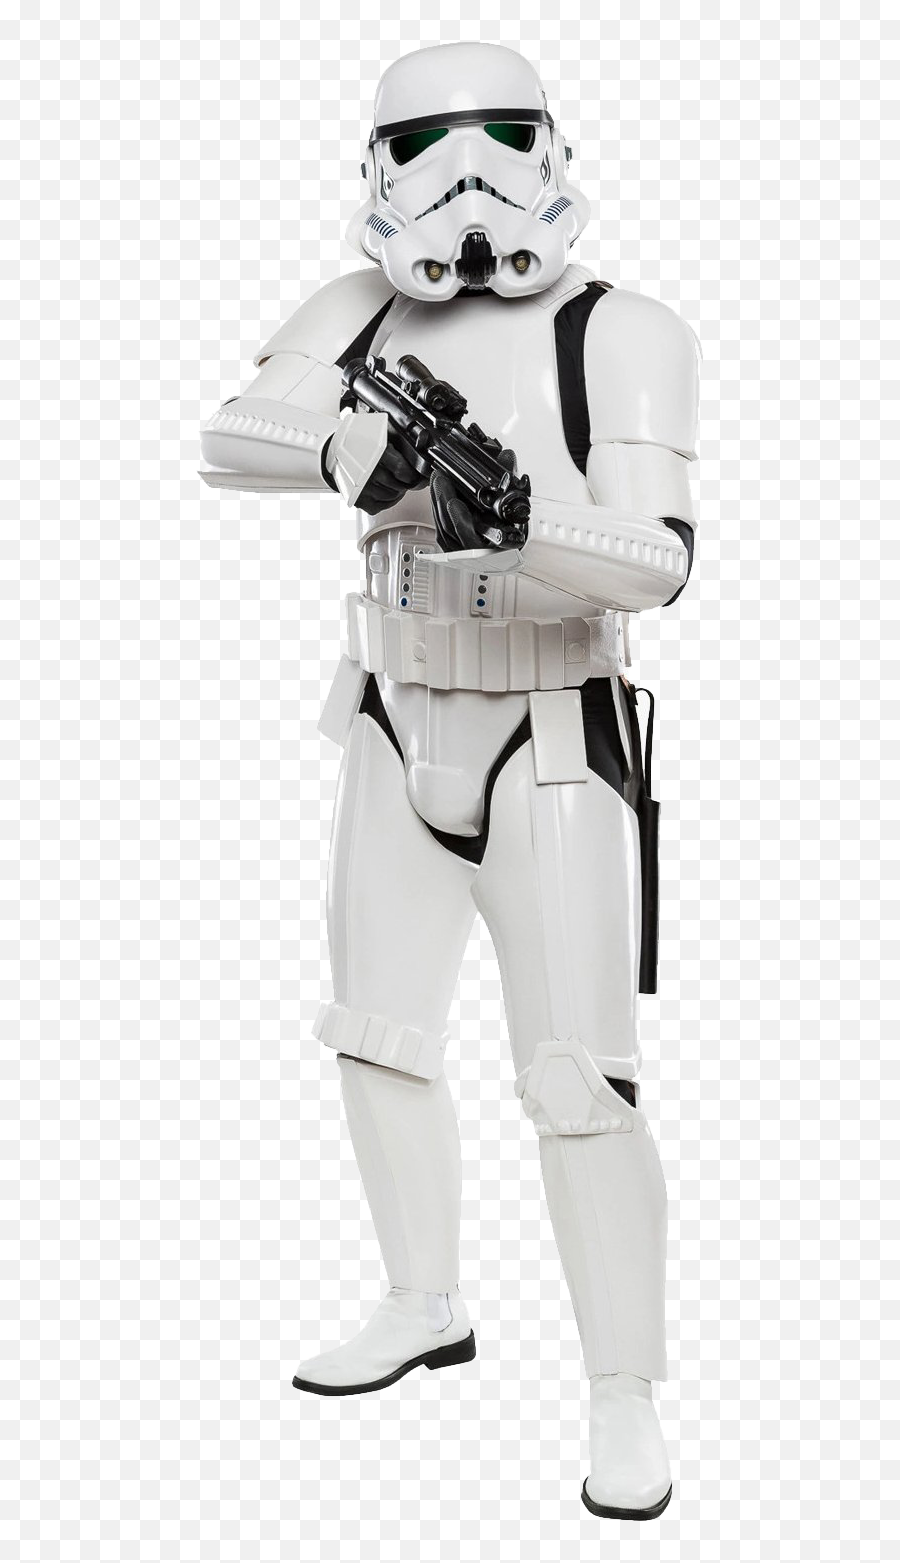 Download Stormtrooper Png Image For Free Emoji,Stormtrooper Png